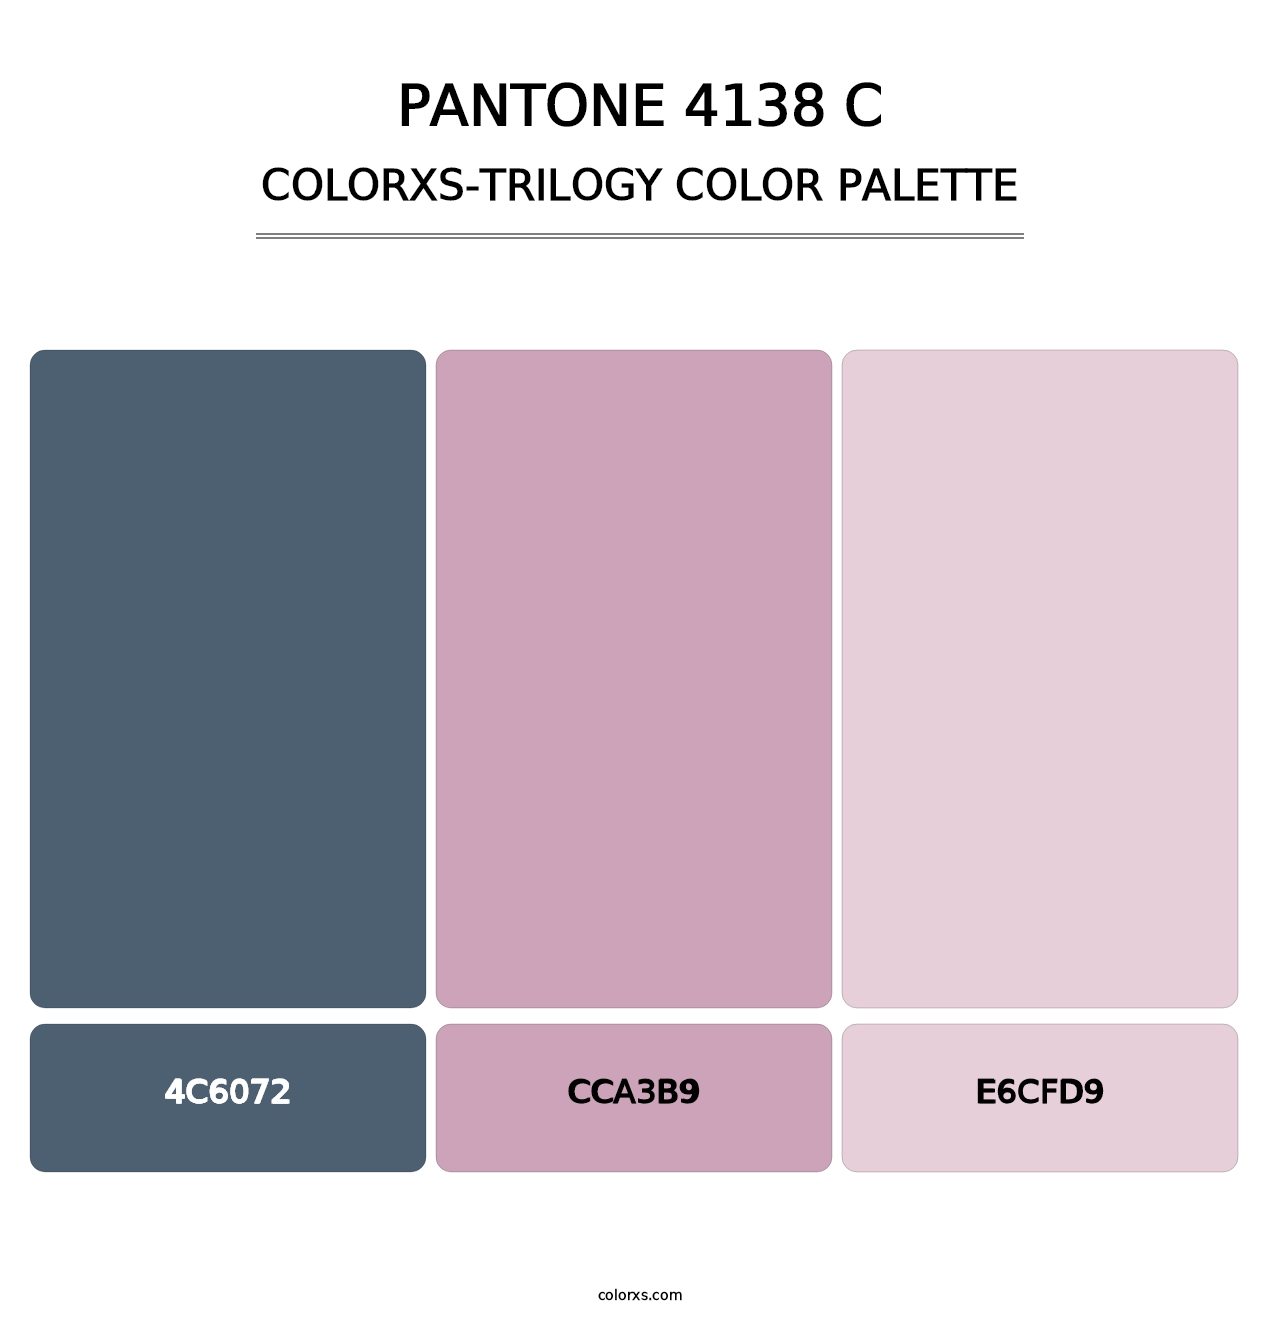 PANTONE 4138 C - Colorxs Trilogy Palette